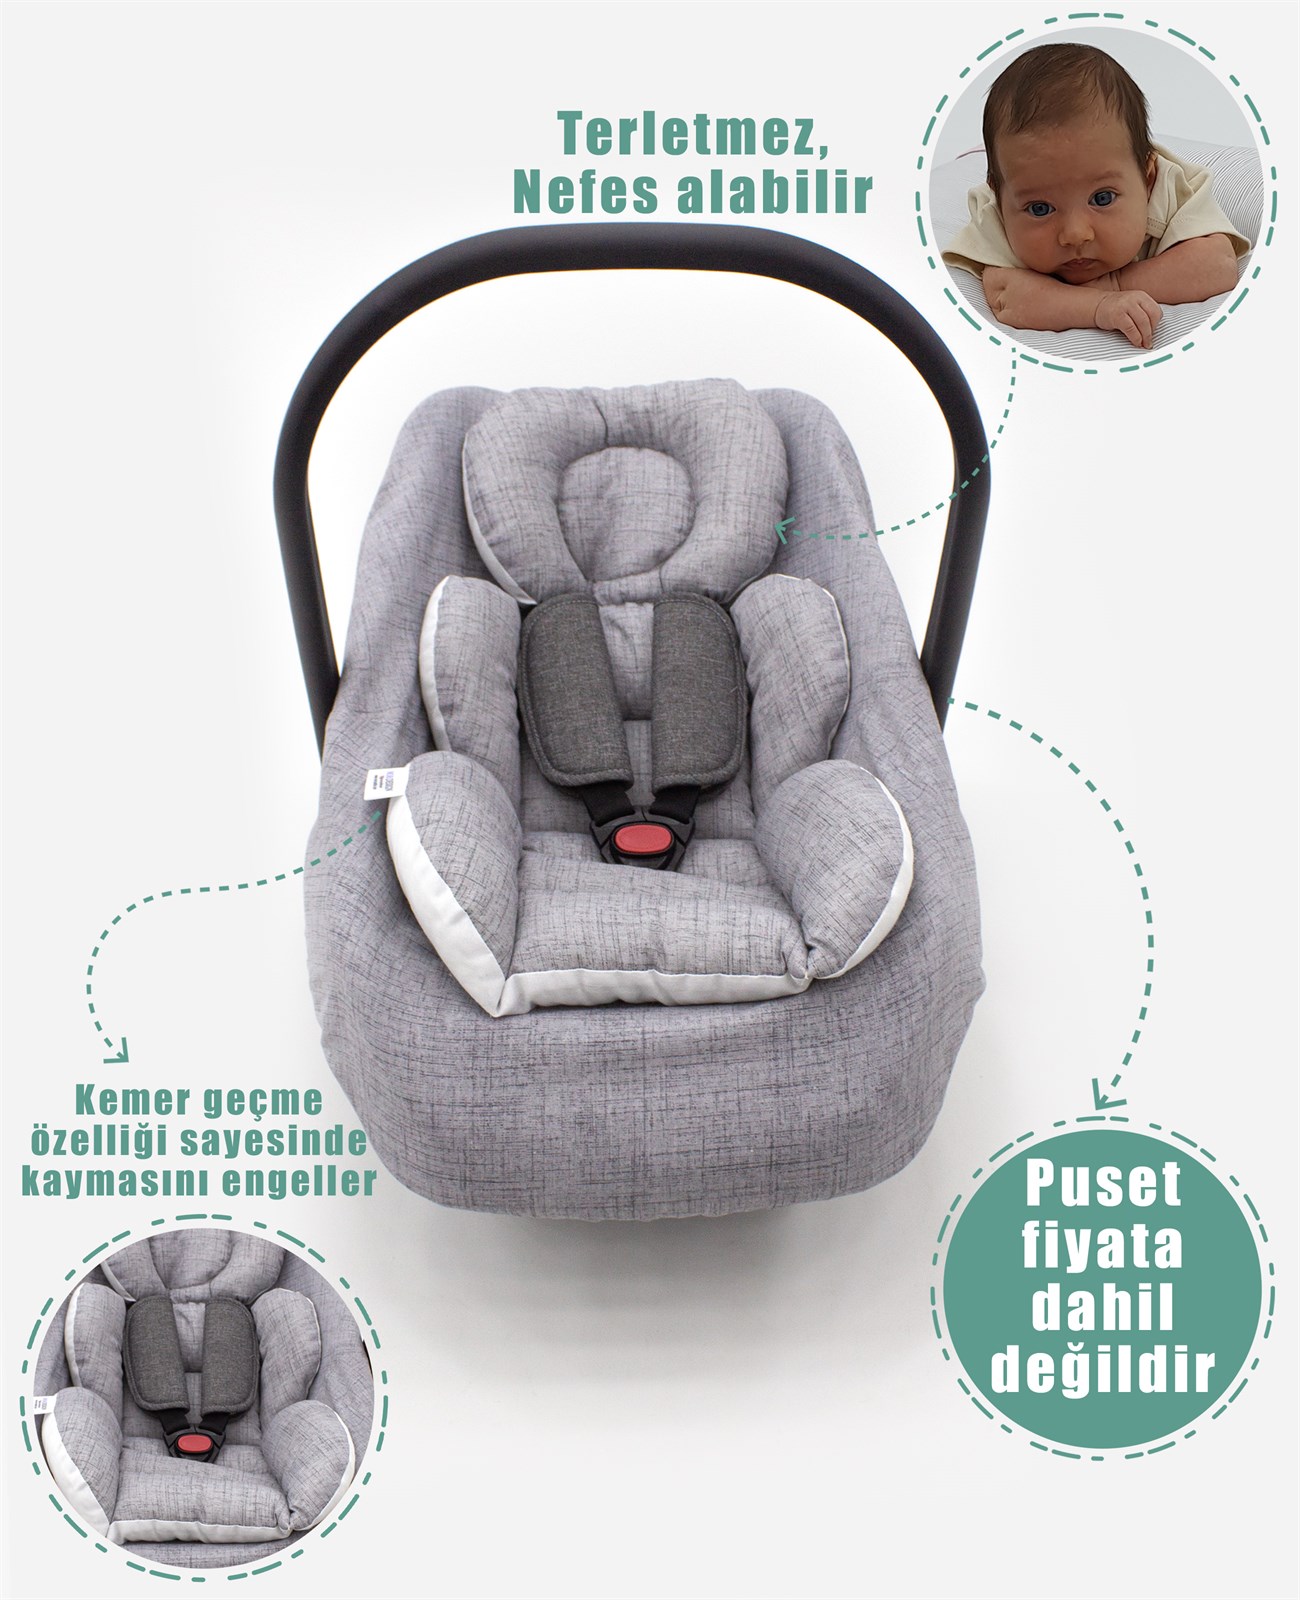 Bebek Puset Minderi, bebekler için kullanılan pamuklu ranforce kumaş, araba  ve puset minderi